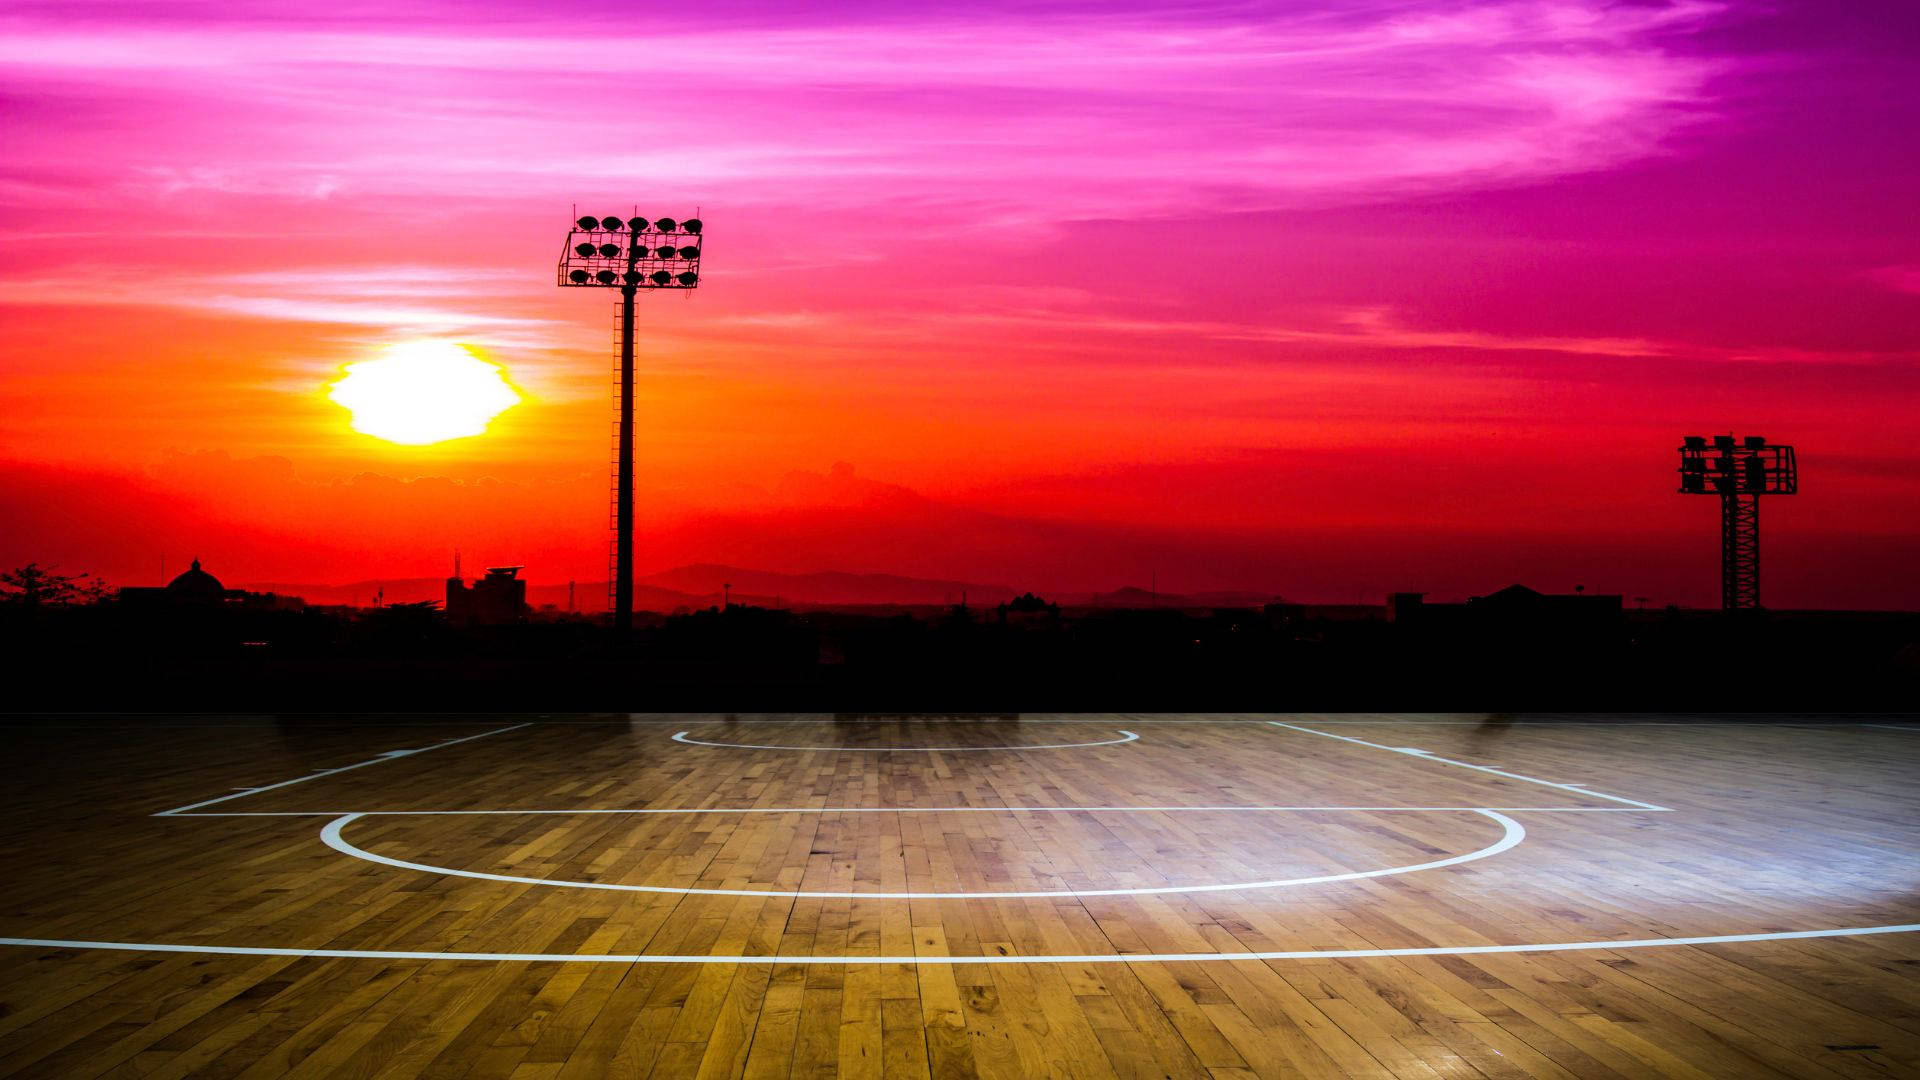 Wooden Basketball Court Sunset Wallpaper